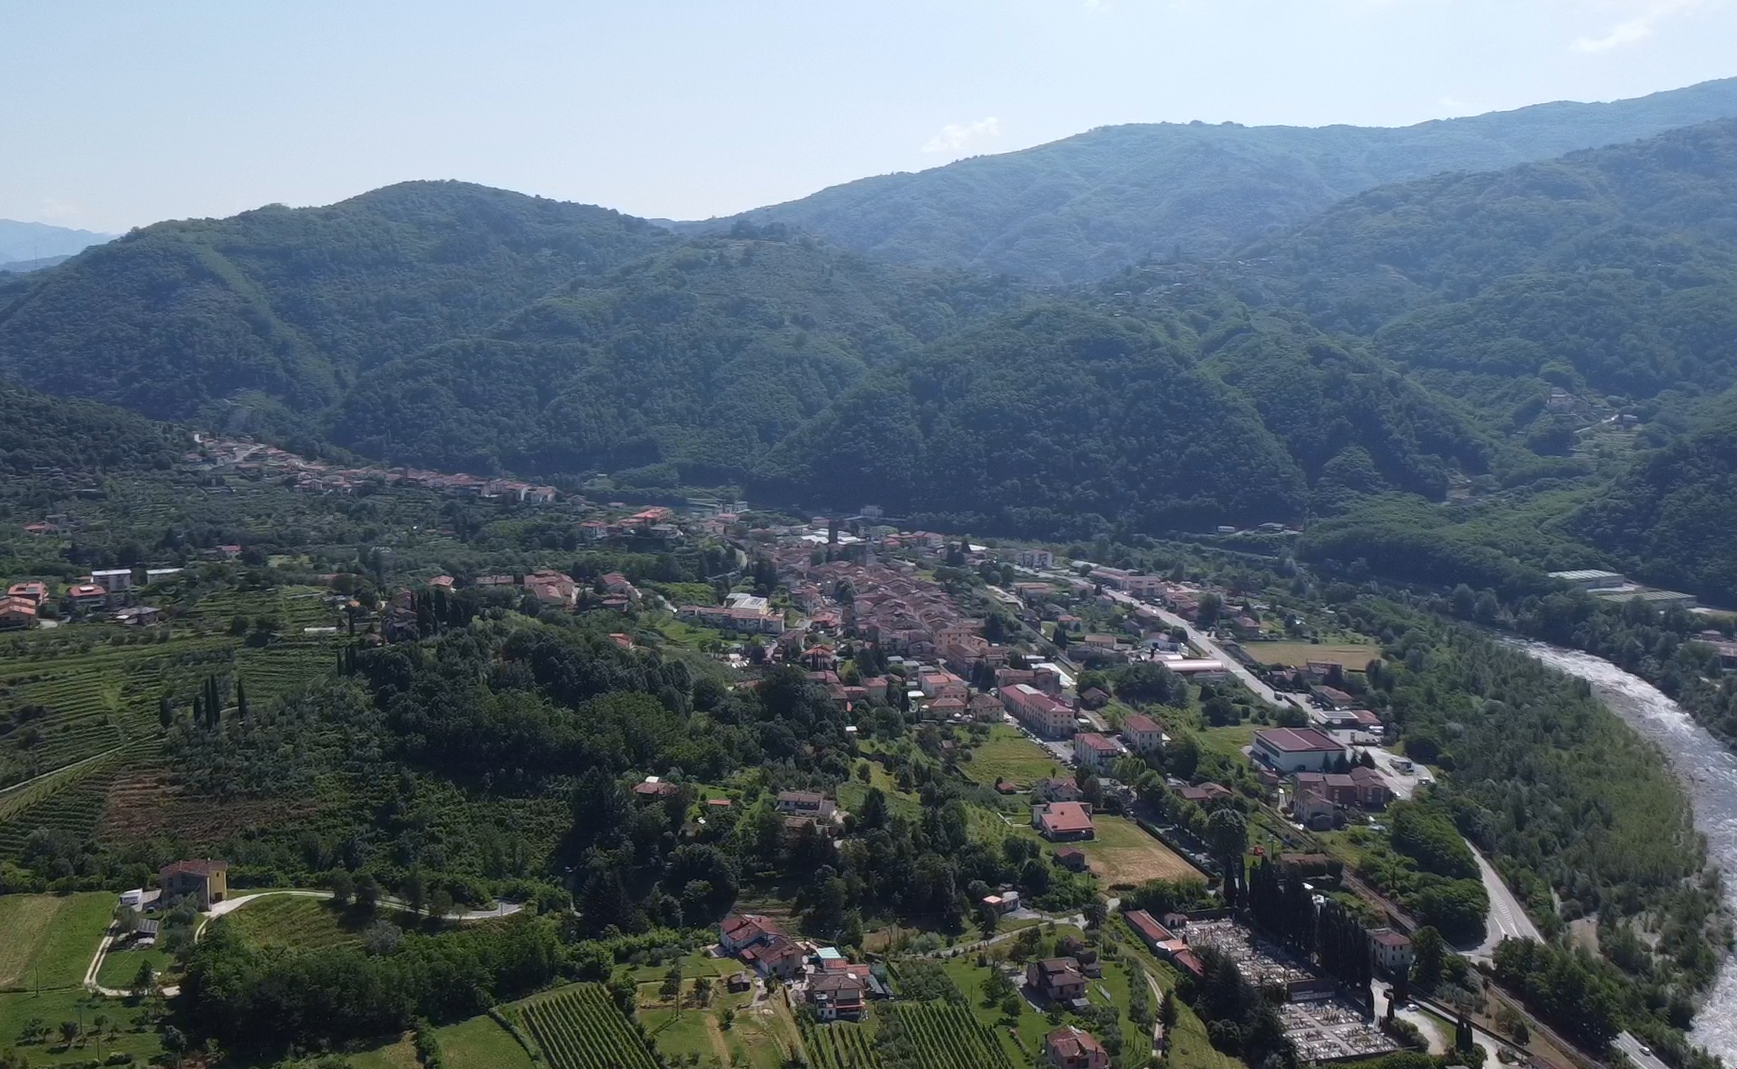 A view of Borgo a Mozzano